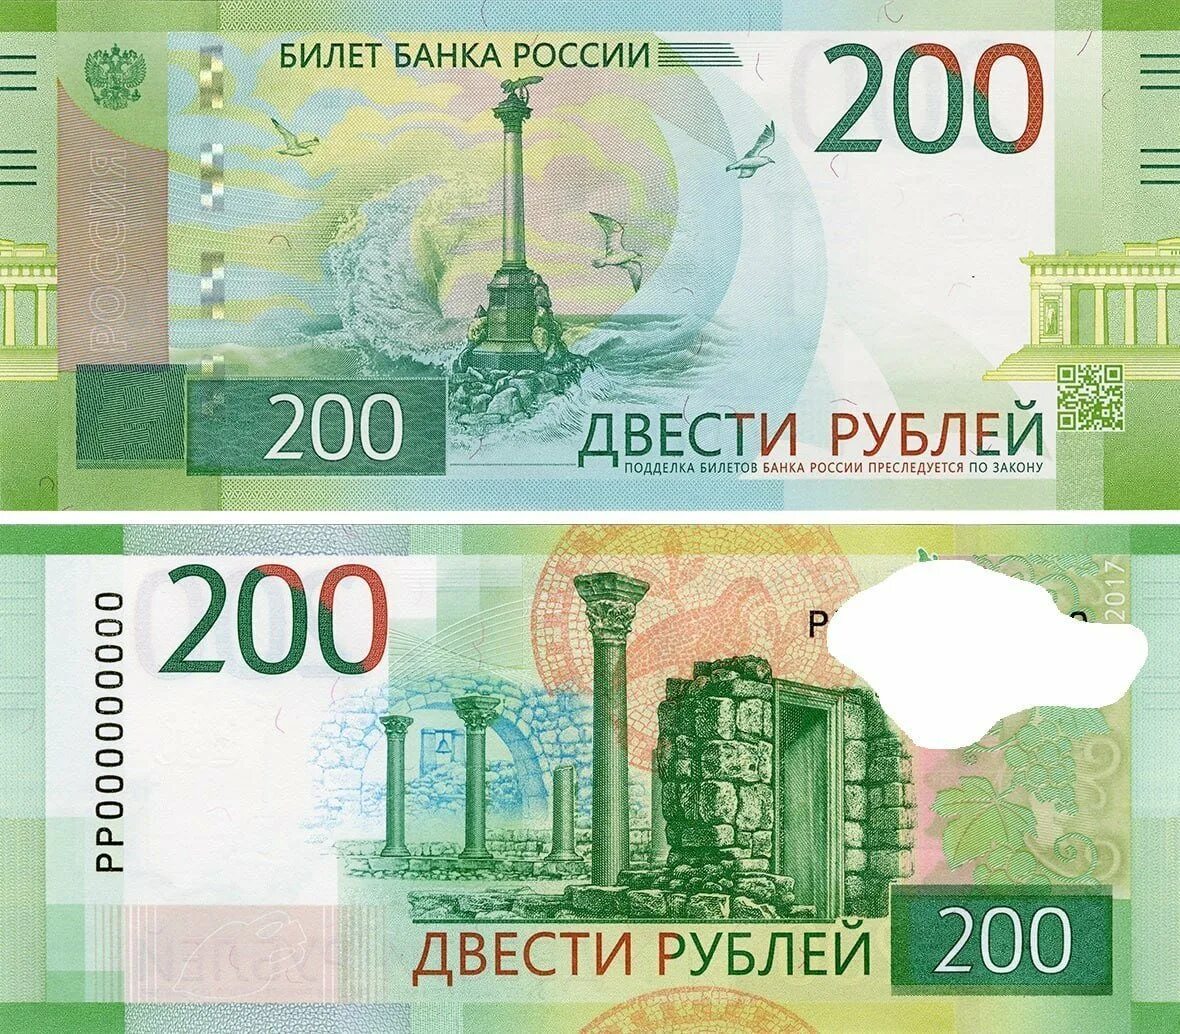 200 рублей бумажные. 200 Рублей банкнота. 200 Рублей банкнота новая. 200 Рублей 1997. Изображение купюры 2000 рублей.